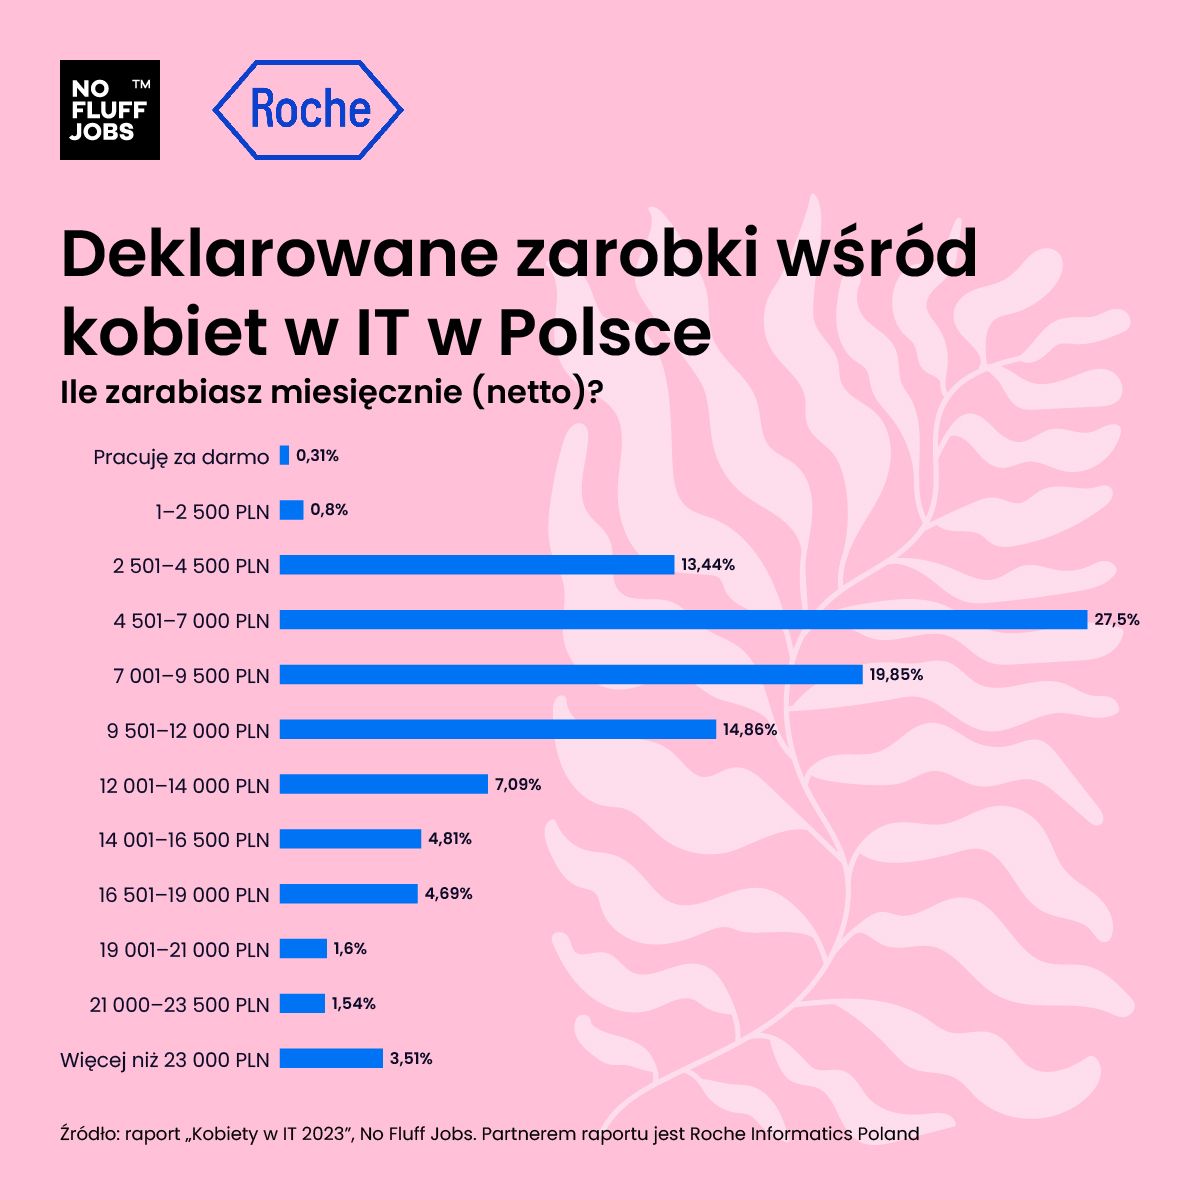 Źródło: Kobiety w IT 2023, No Fluff Jobs, Roche Informatics Poland